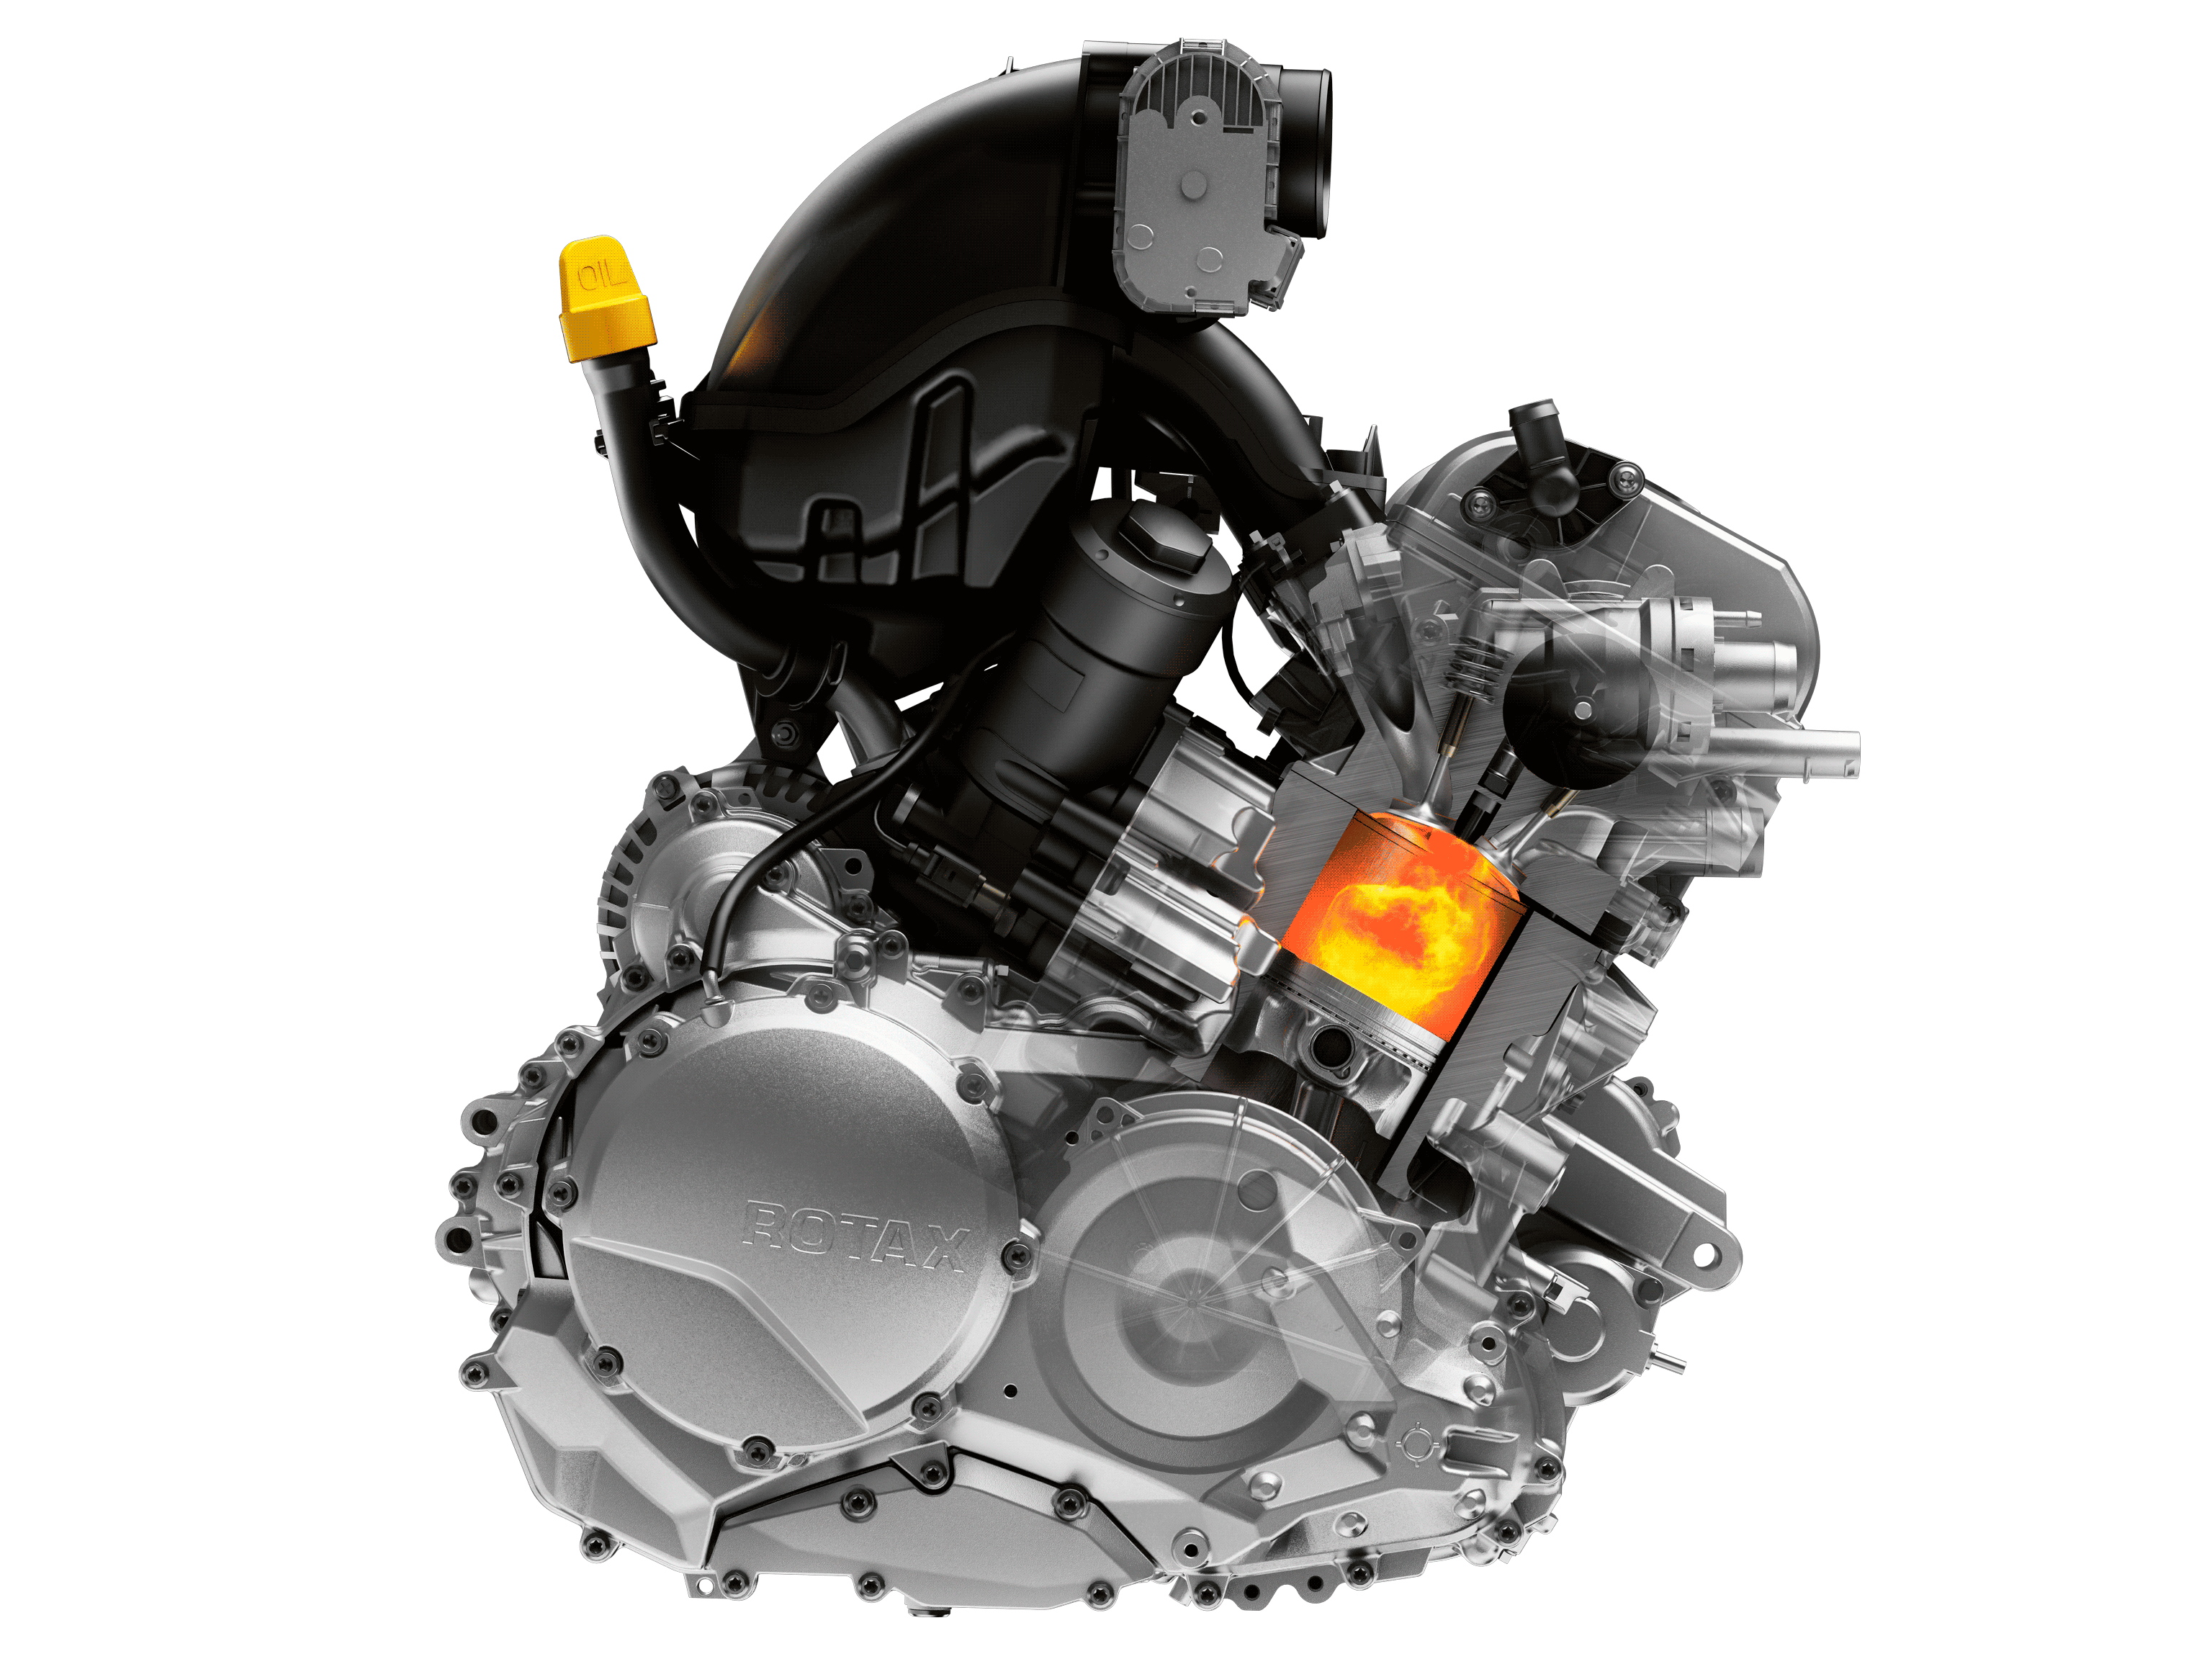  Ilustracija motorja Rotax